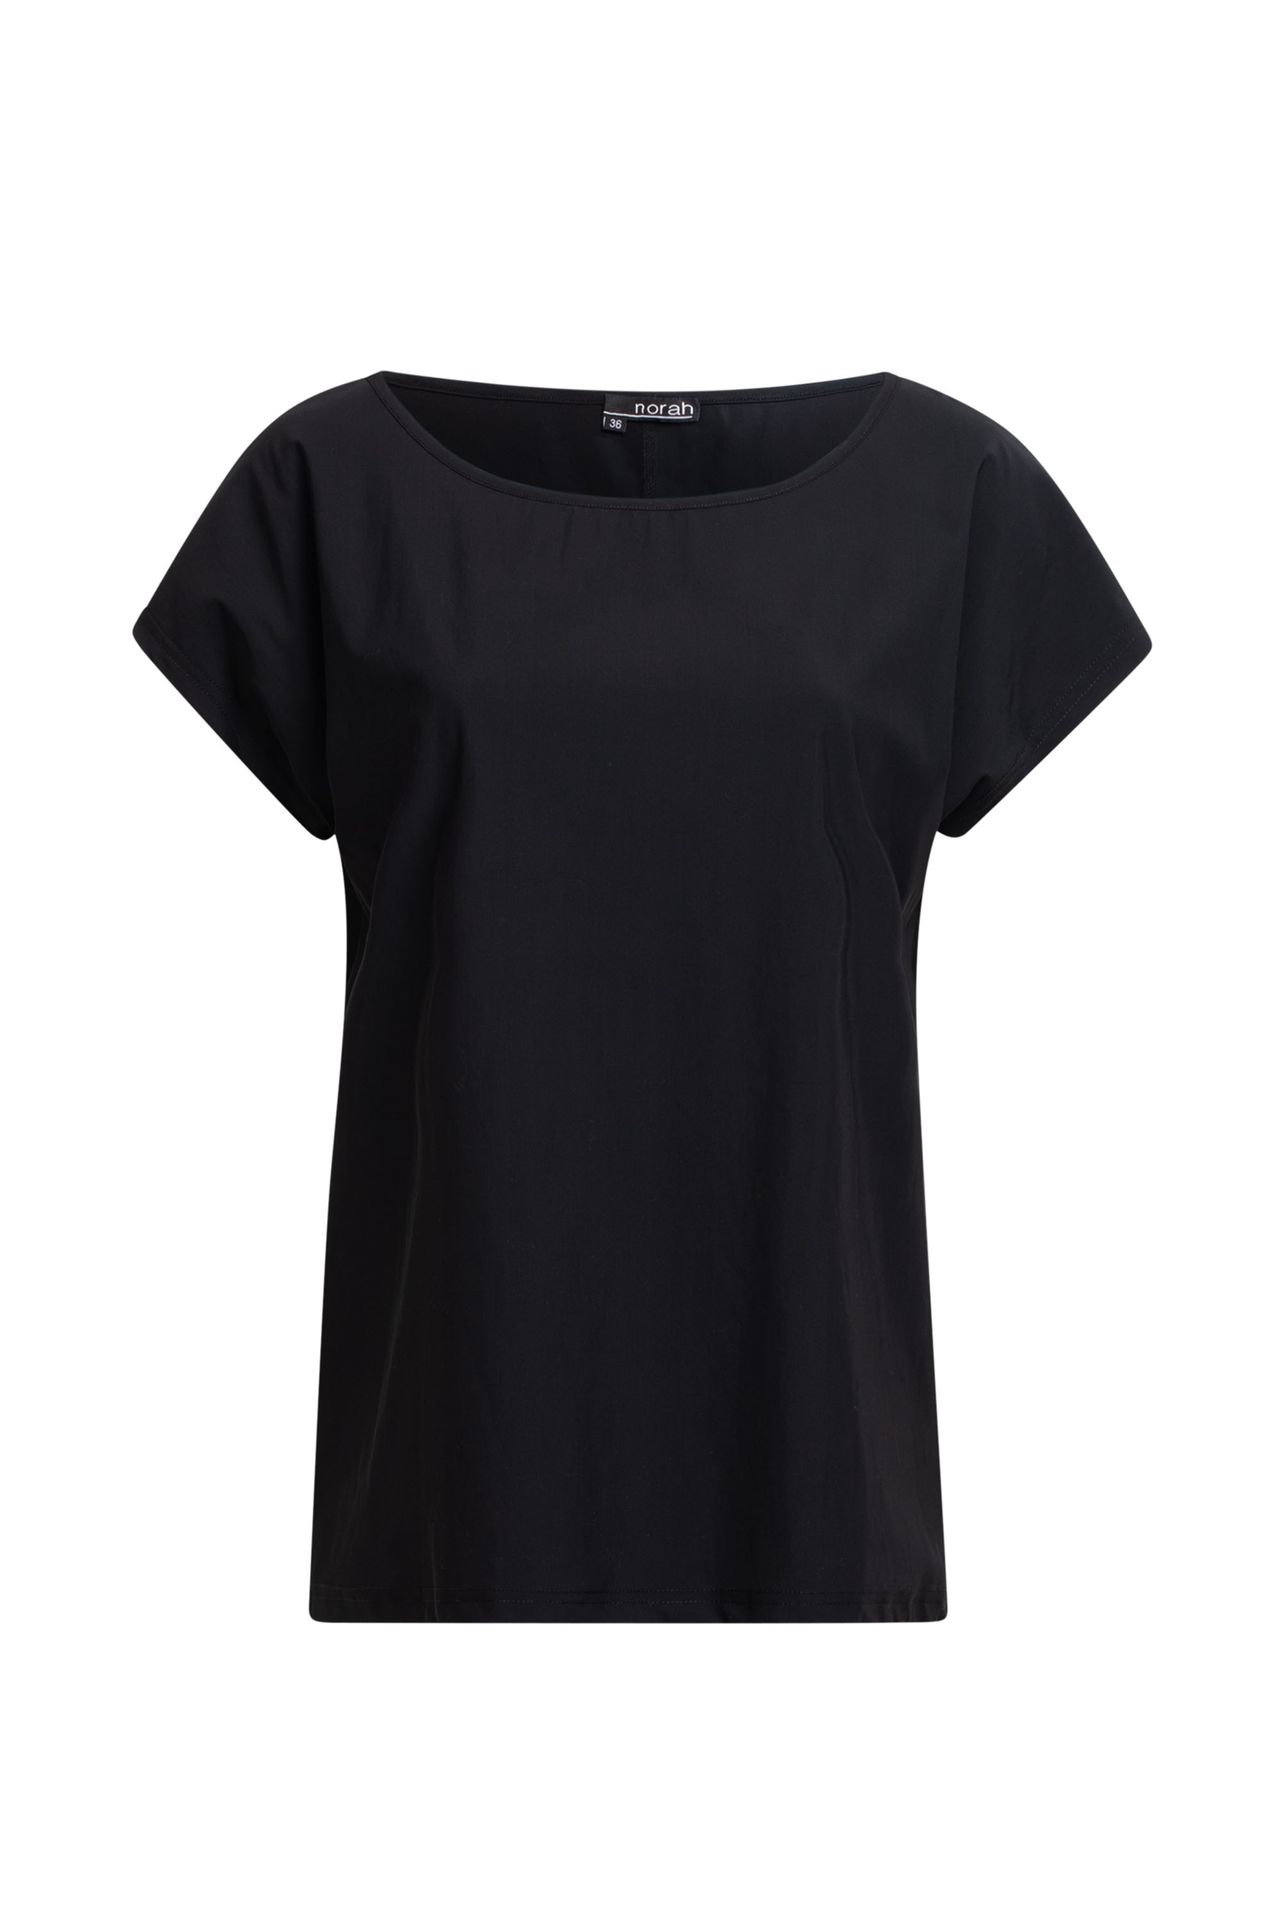 Norah Shirt zwart travelstof black 211418-001